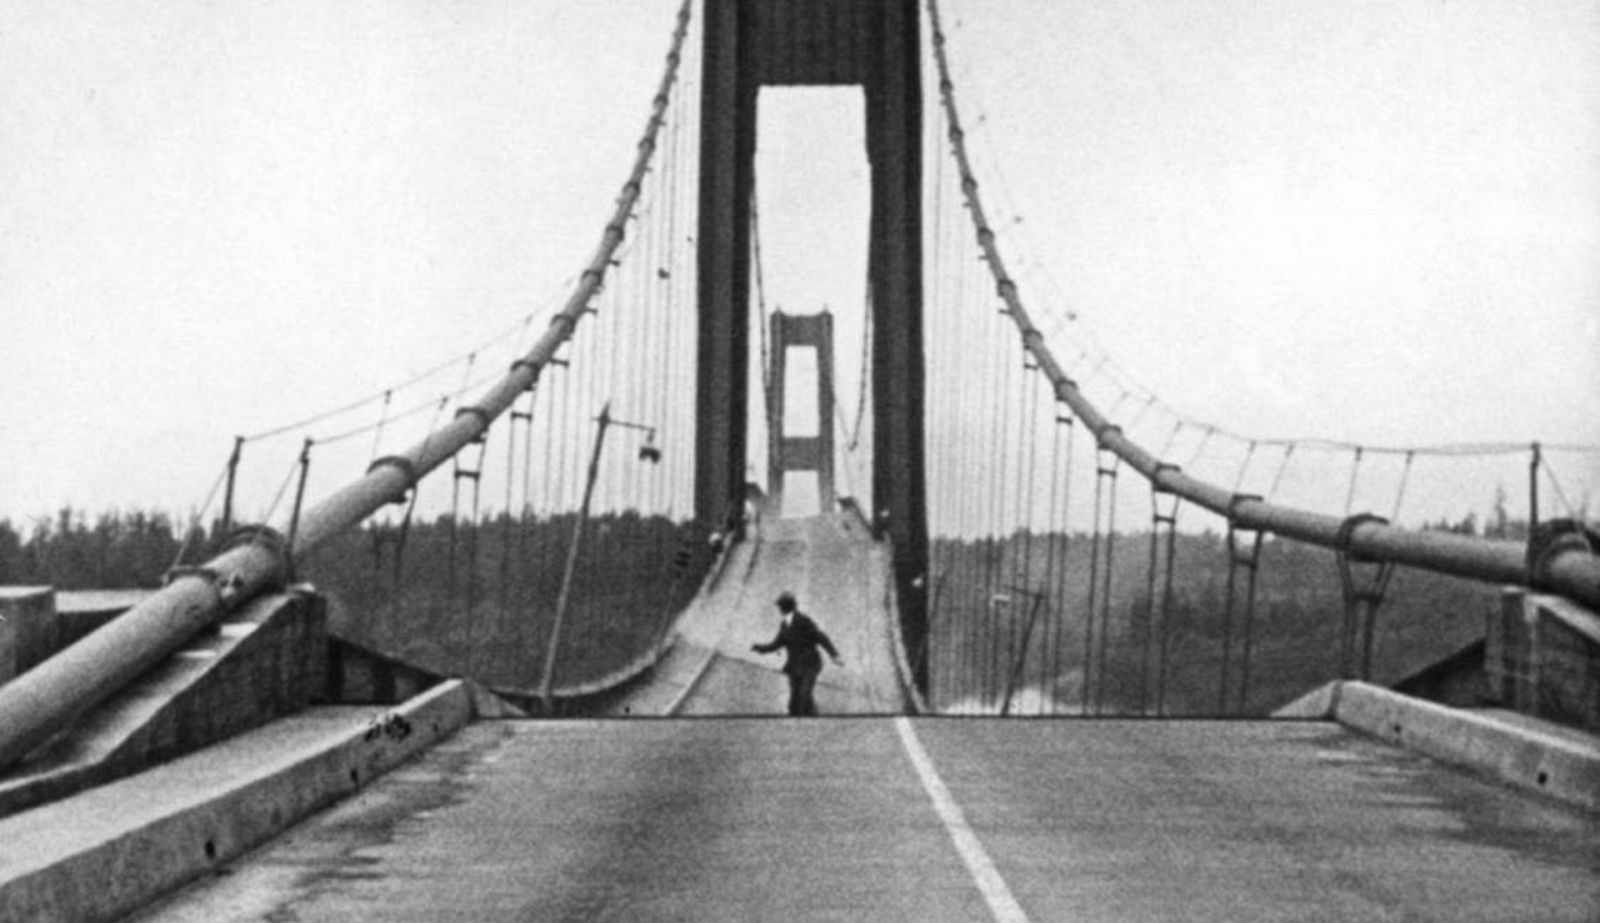 El Condensador de Fluzo - Curiosidades históricas - El Puente de Tacoma Narrows